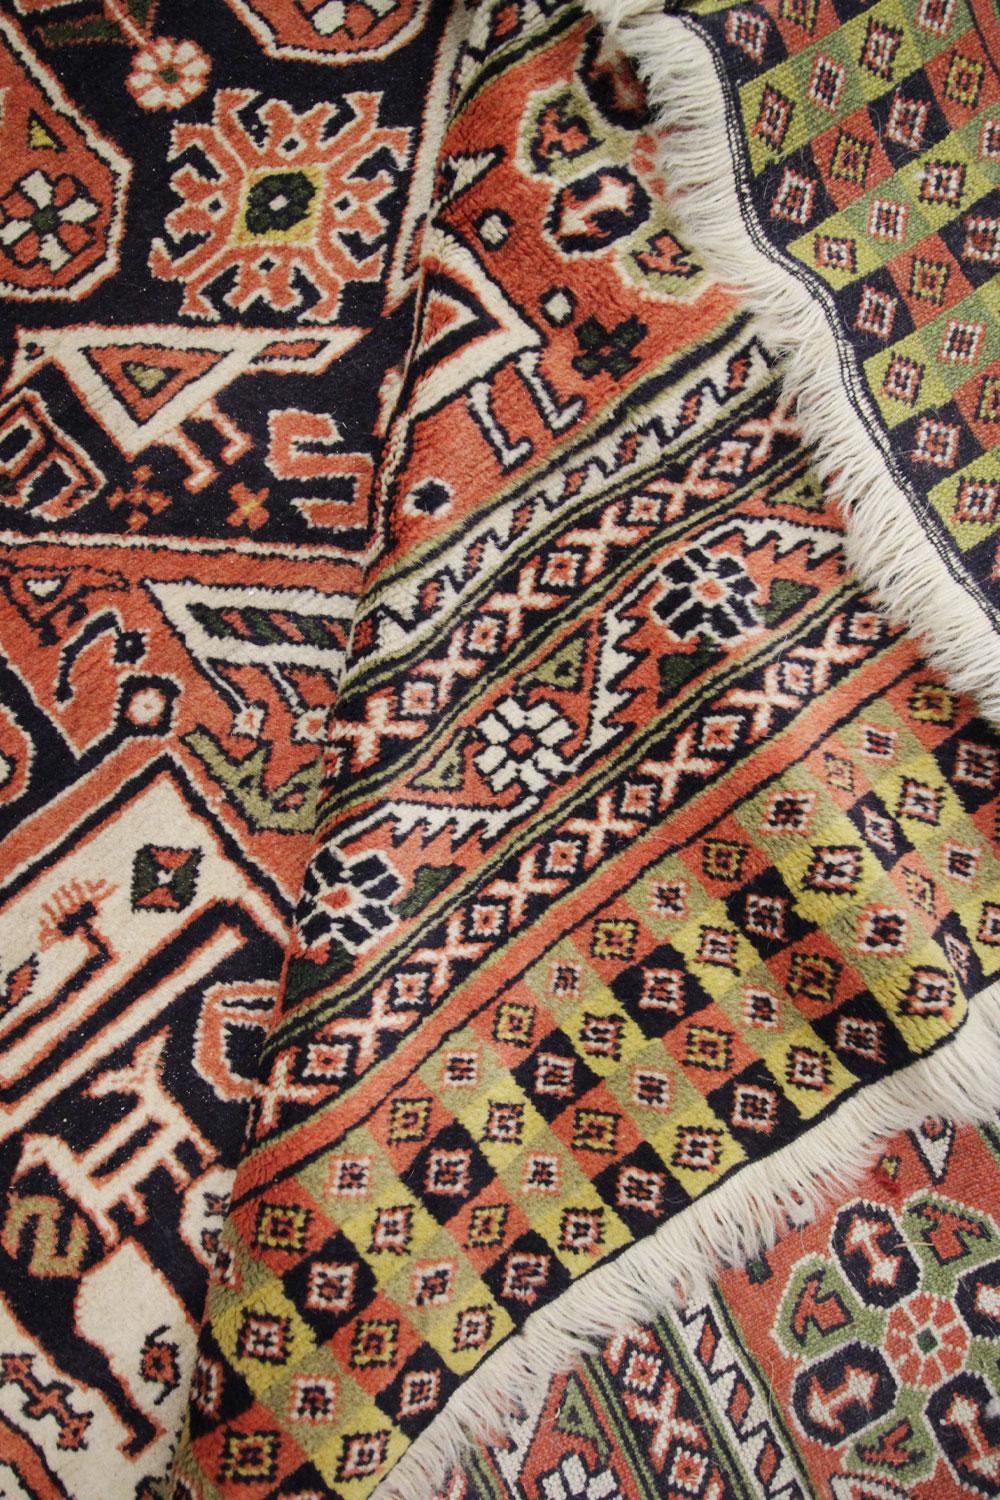 Dieser handgefertigte Teppich aus der Mitte des Jahrhunderts ist von hoher Qualität und weist ein kompliziert gewebtes geometrisches Muster auf. Mit seiner vielseitigen Farbpalette aus tiefem Orange und kontrastierenden Blautönen ist dieser Teppich